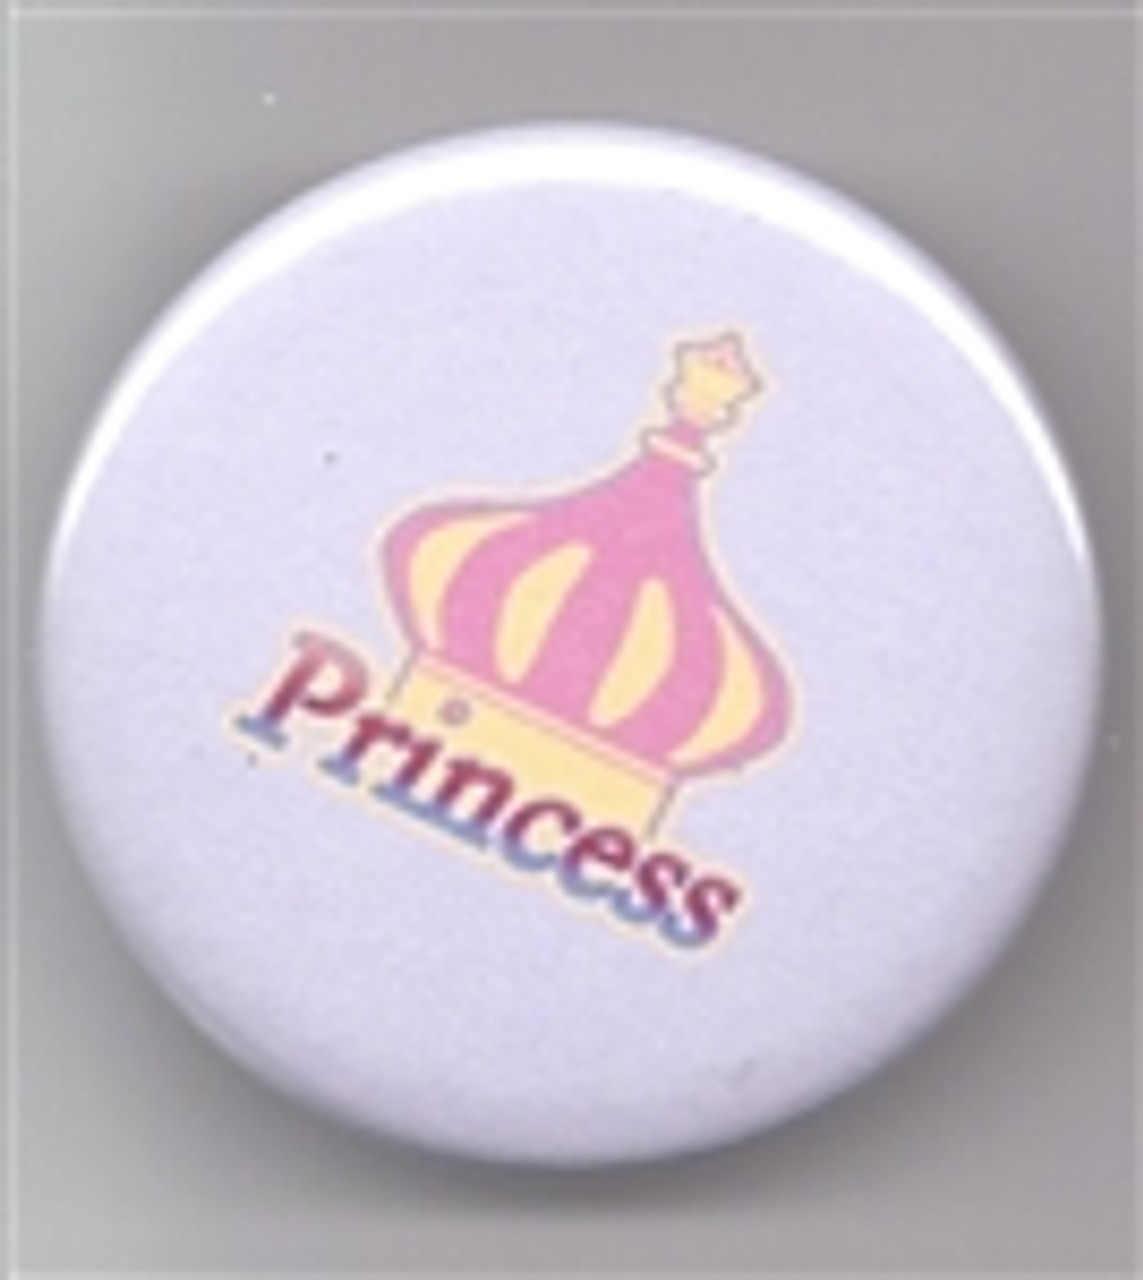 Princess Button